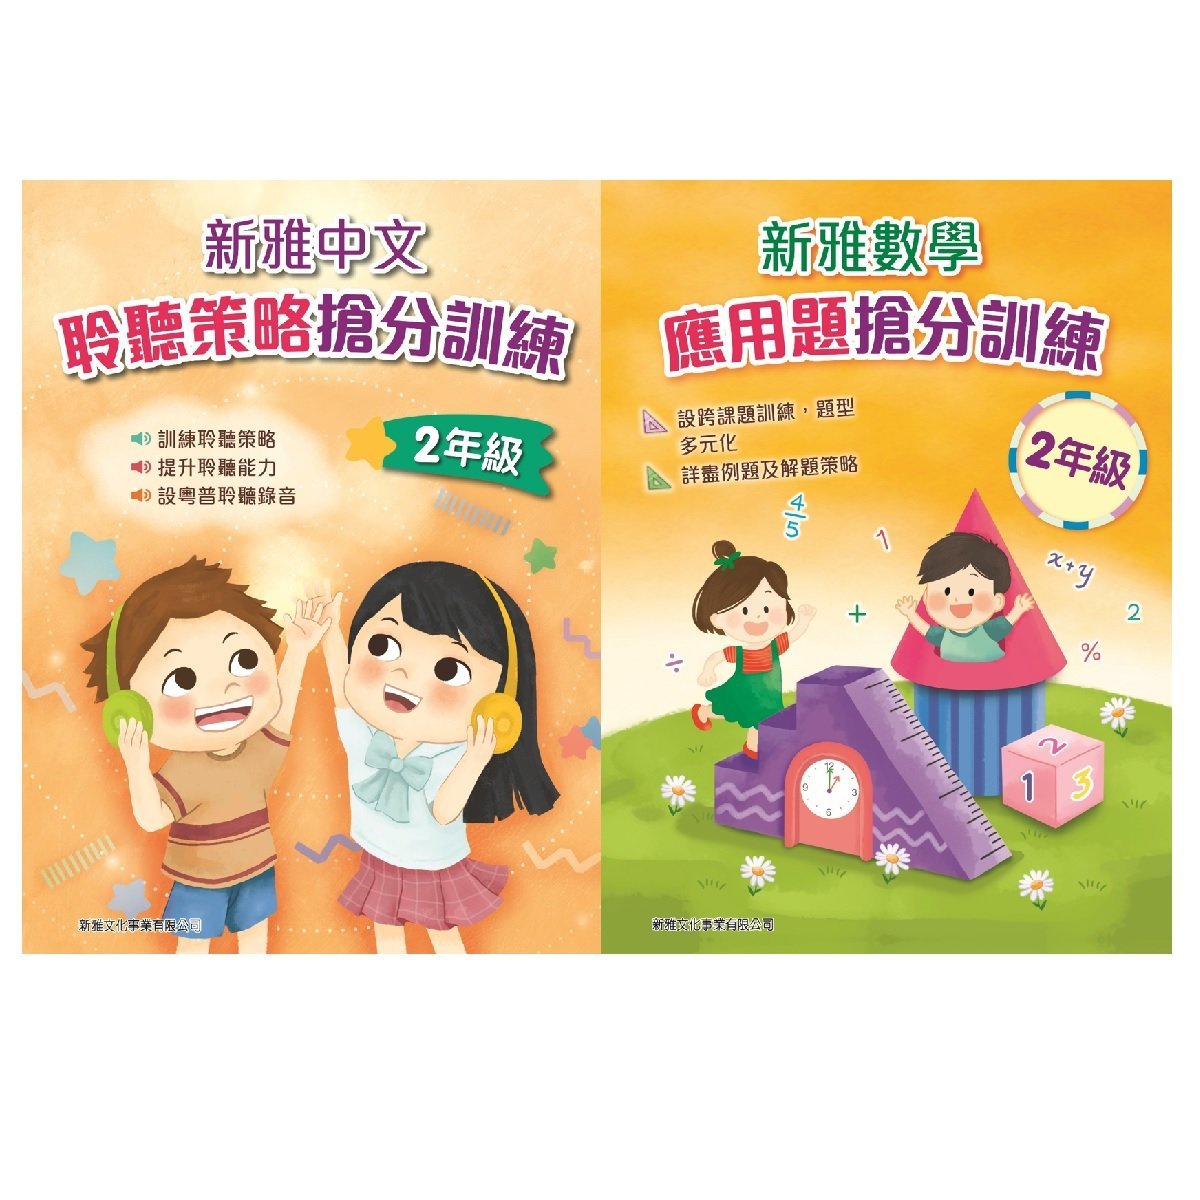 新雅中文聆聽策略搶分訓練、新雅數學應用題搶分訓練 (2年級)  (一套2冊)